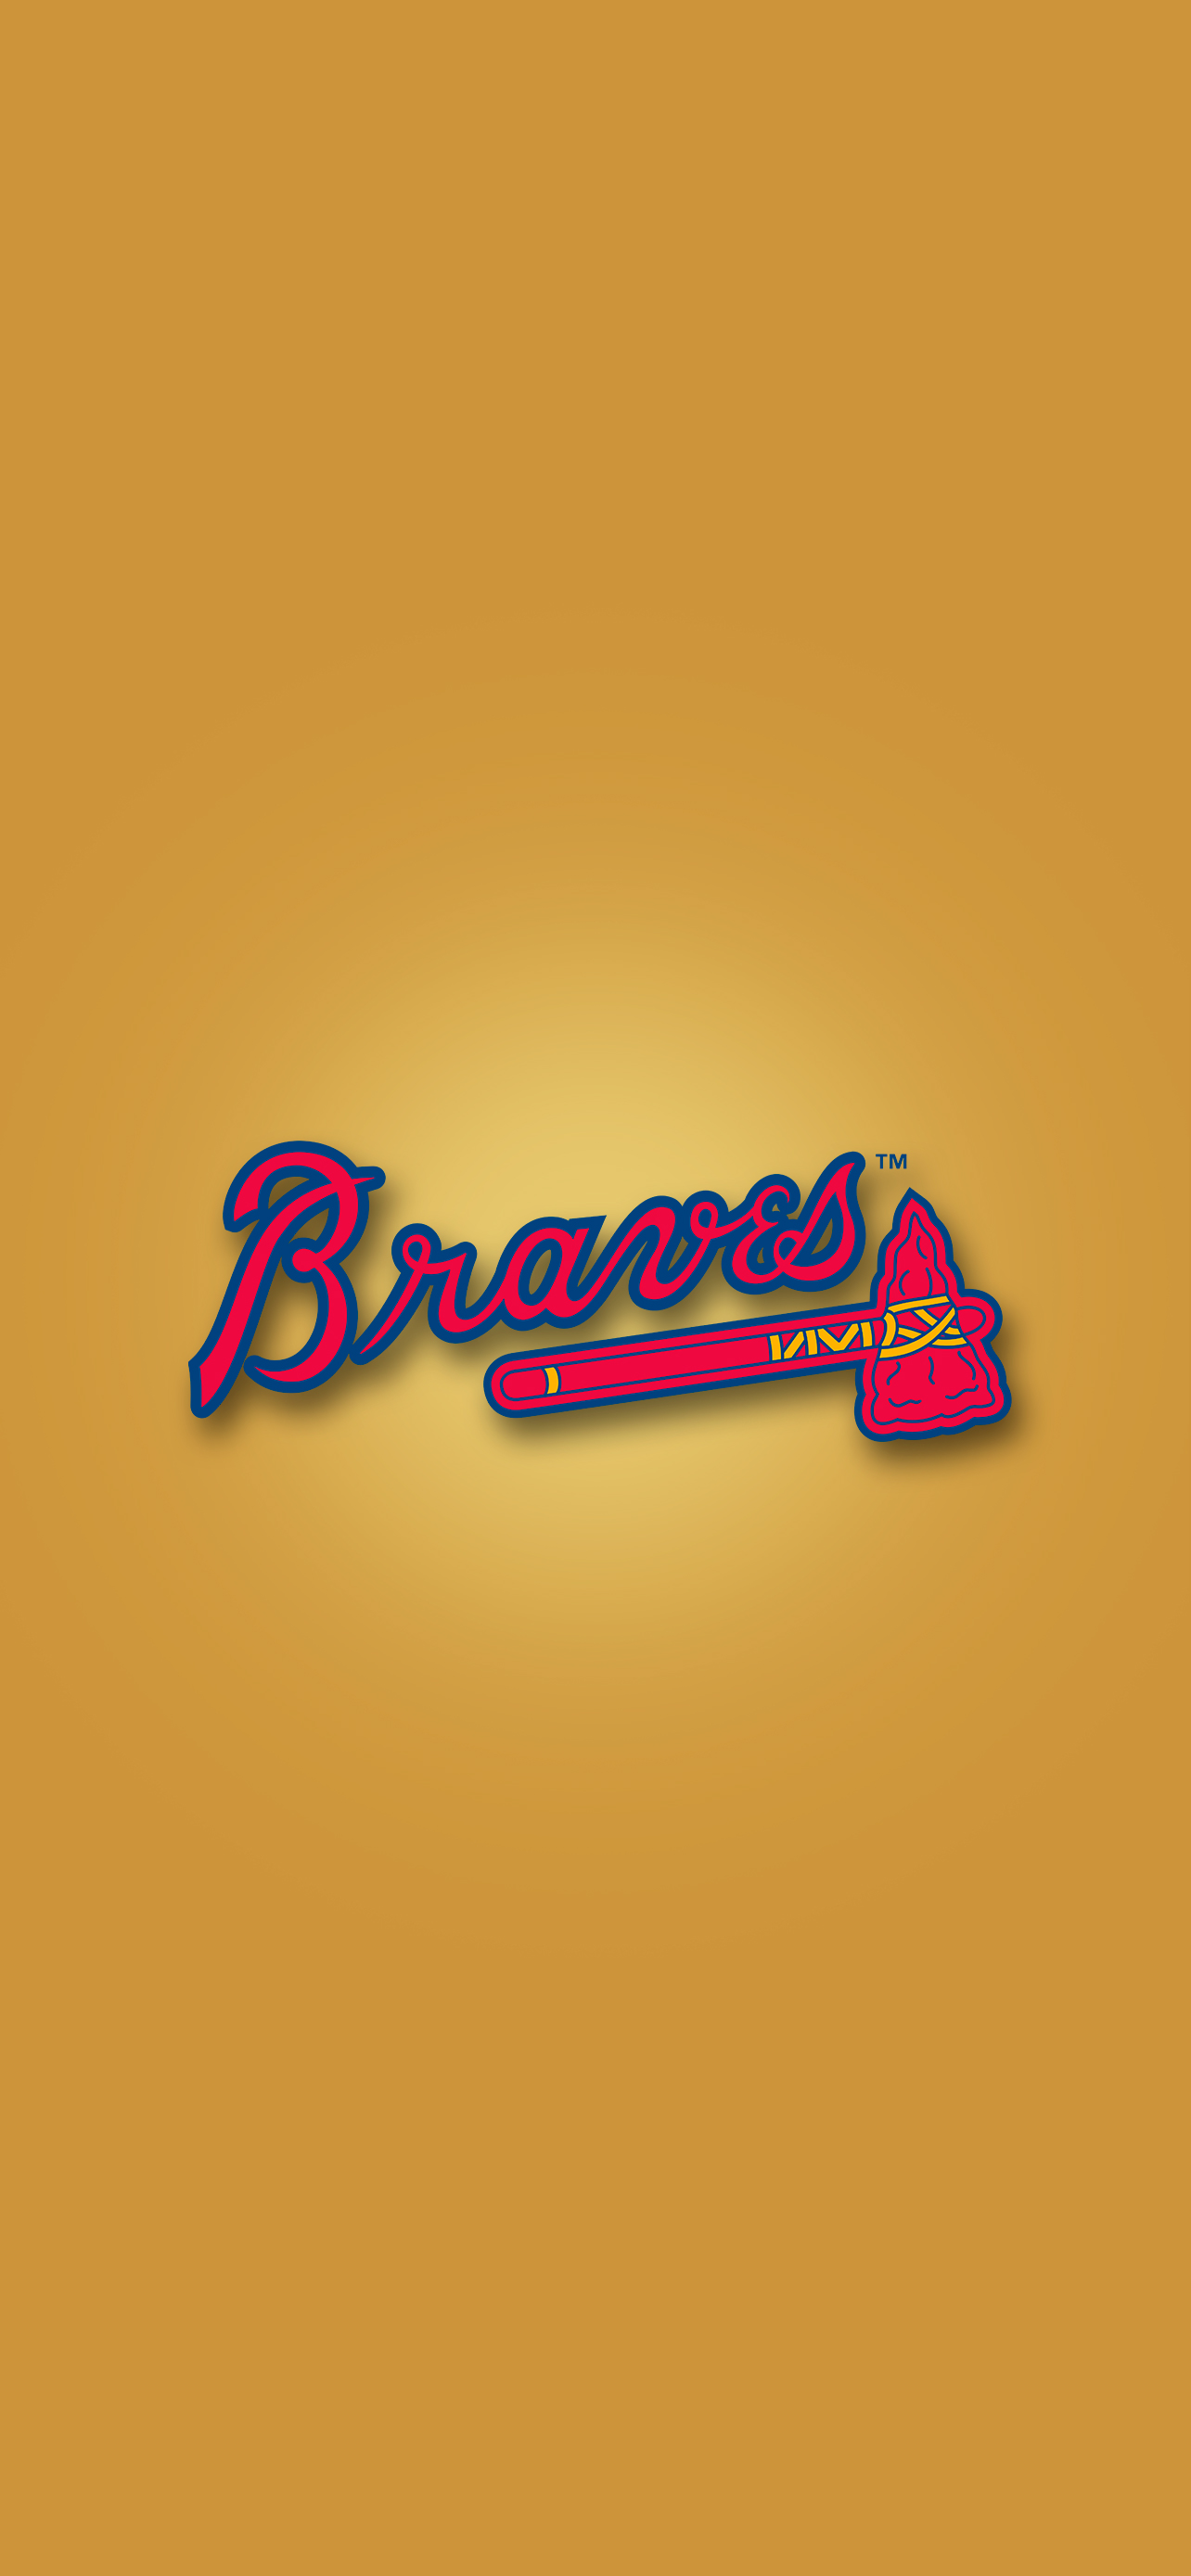 Atlanta Braves wallpaper by bm3cross  Download on ZEDGE  024e